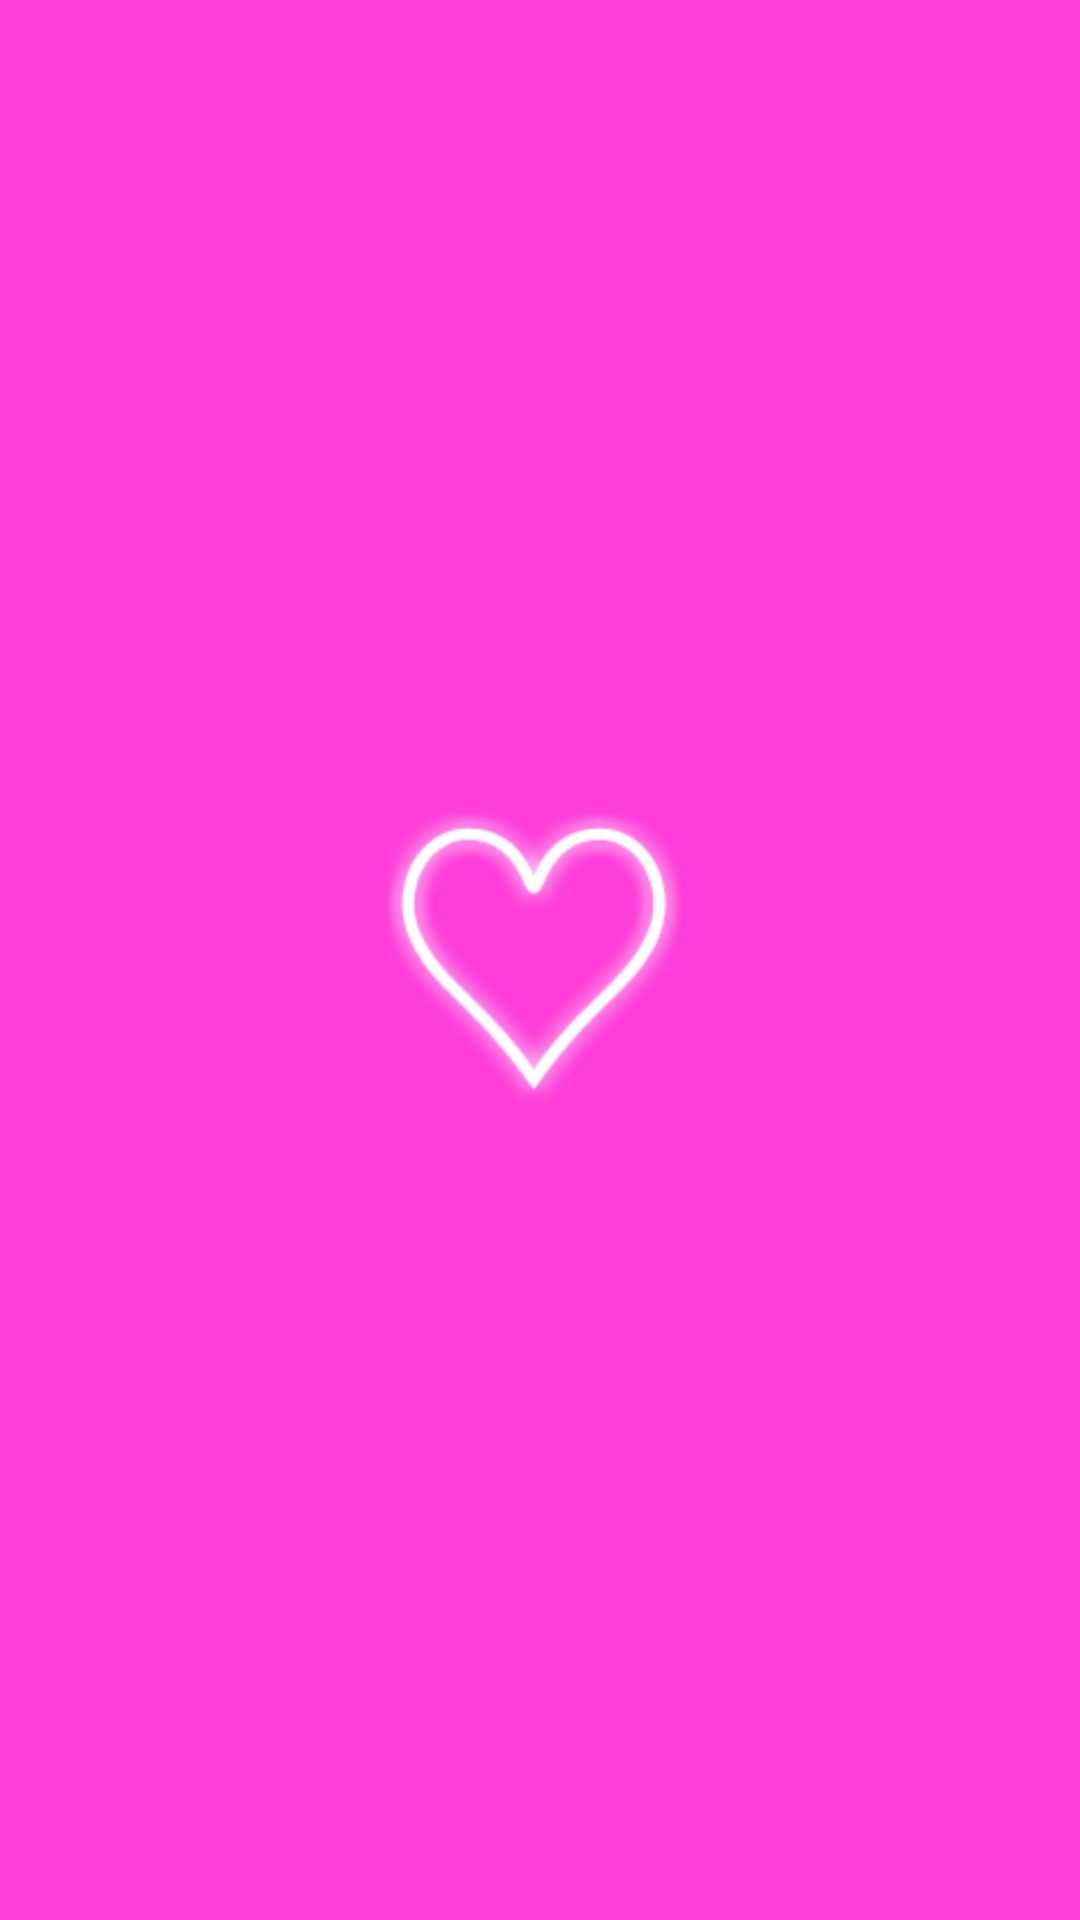 Hd Pink Heart Wallpaper 1